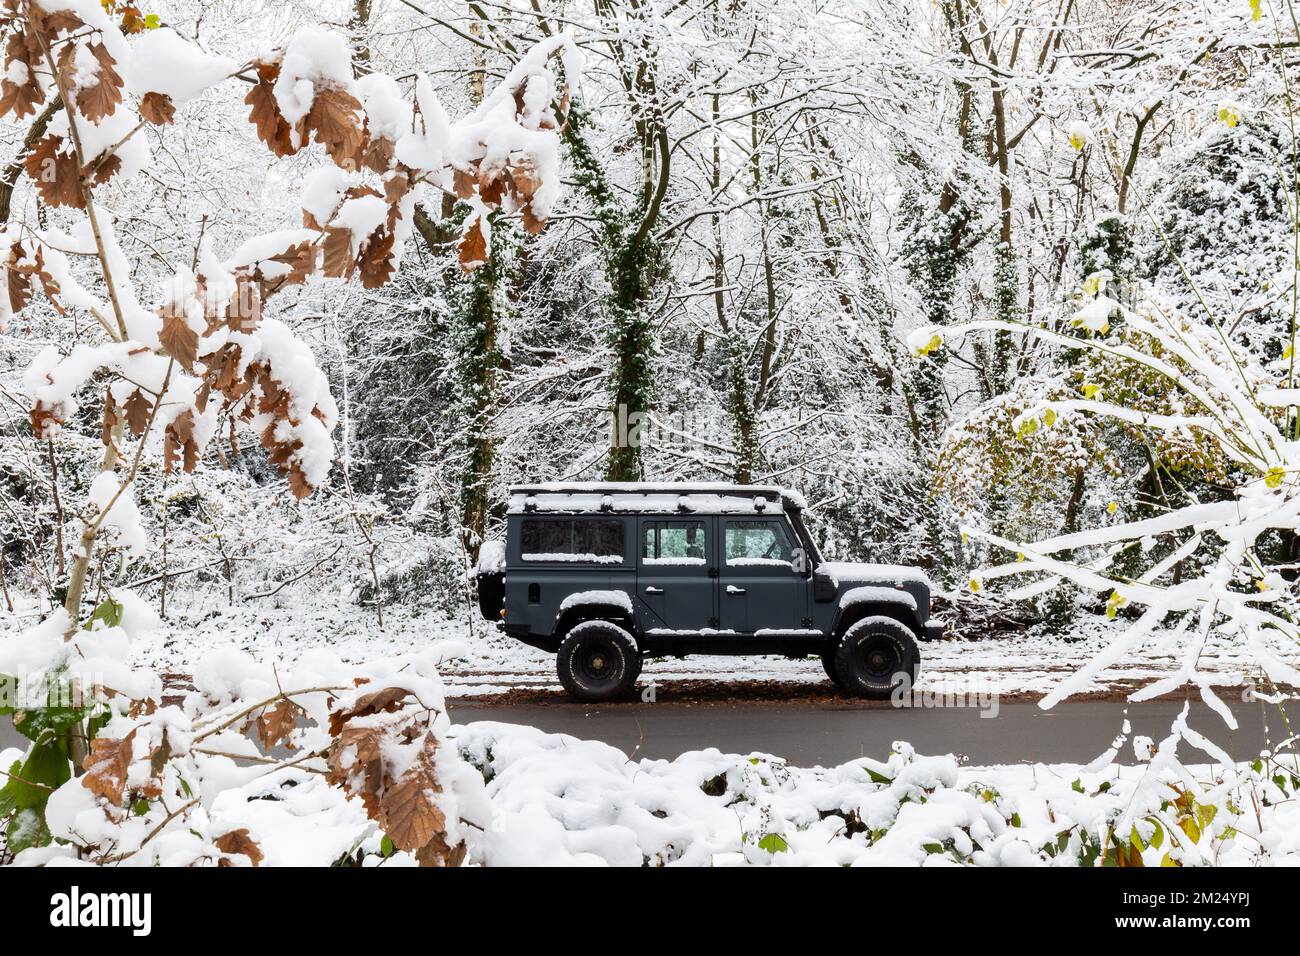 Un Land Rover Defender d'origine noire est stationné sous des arbres enneigés. Des arbres et des feuilles entourent ce magnifique moteur d'entraînement noir à quatre roues Banque D'Images